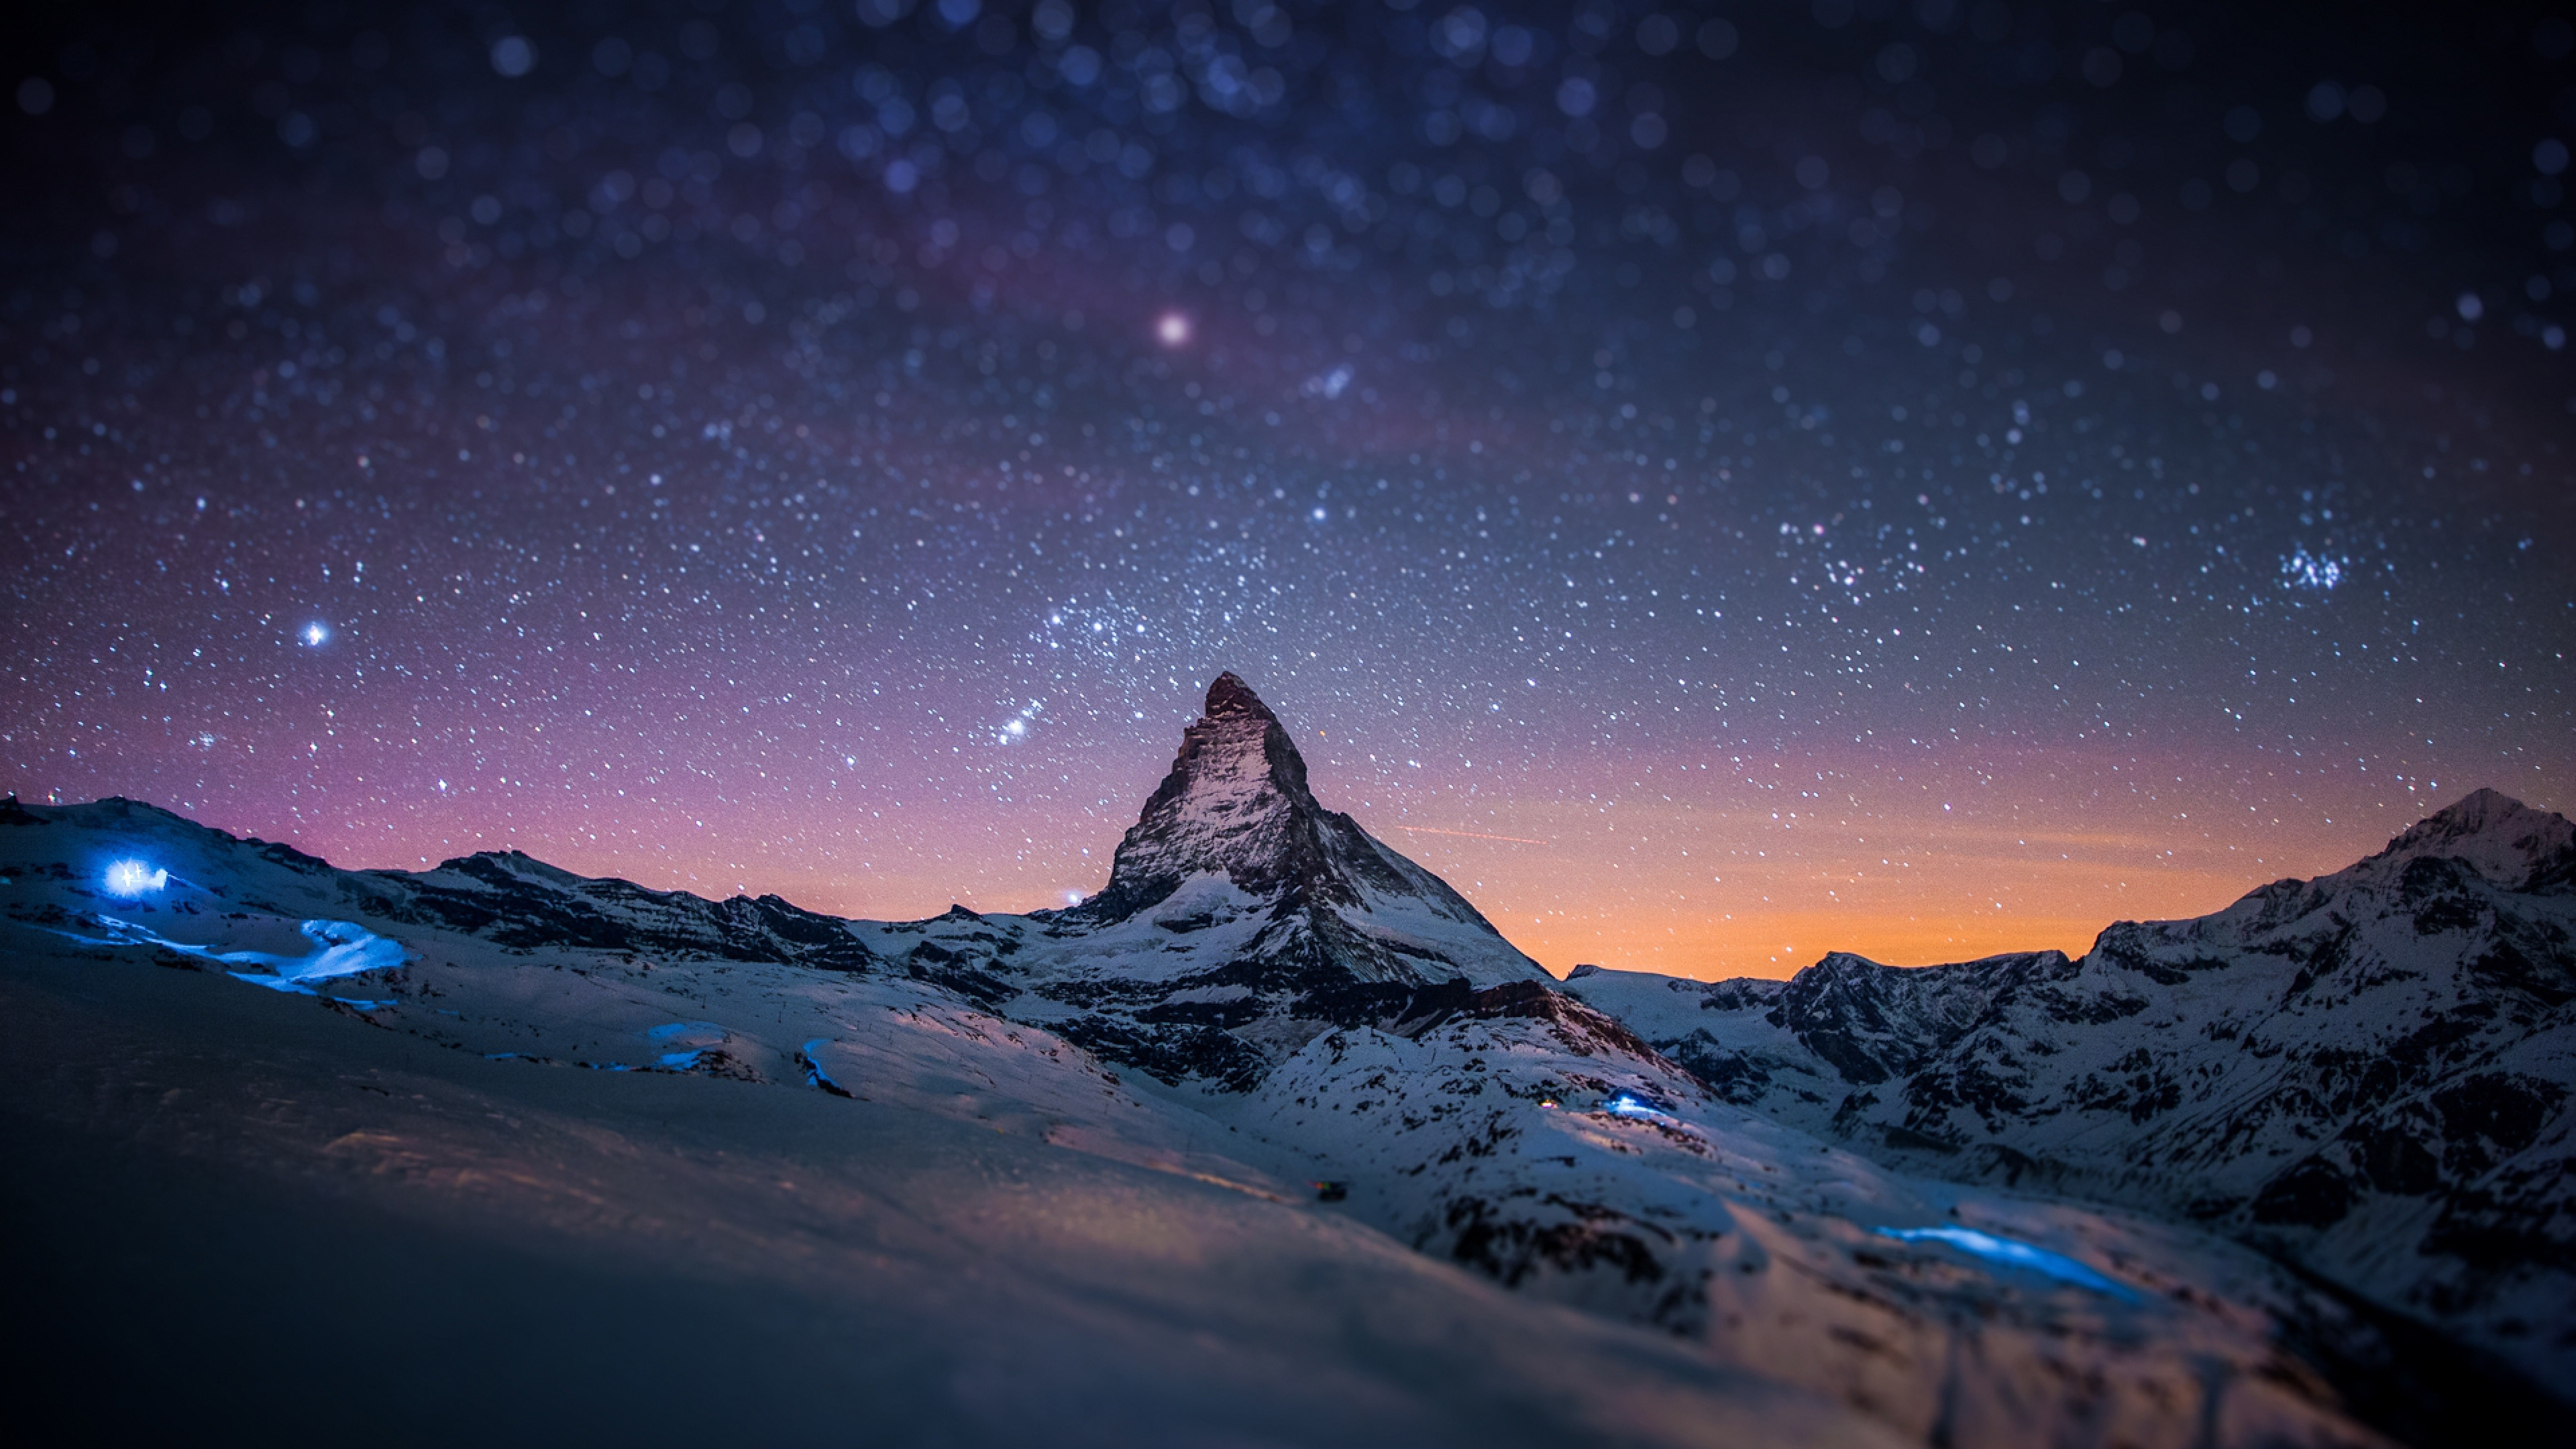 Montaña Cubierta de Nieve Bajo la Noche Estrellada. Wallpaper in 3840x2160 Resolution